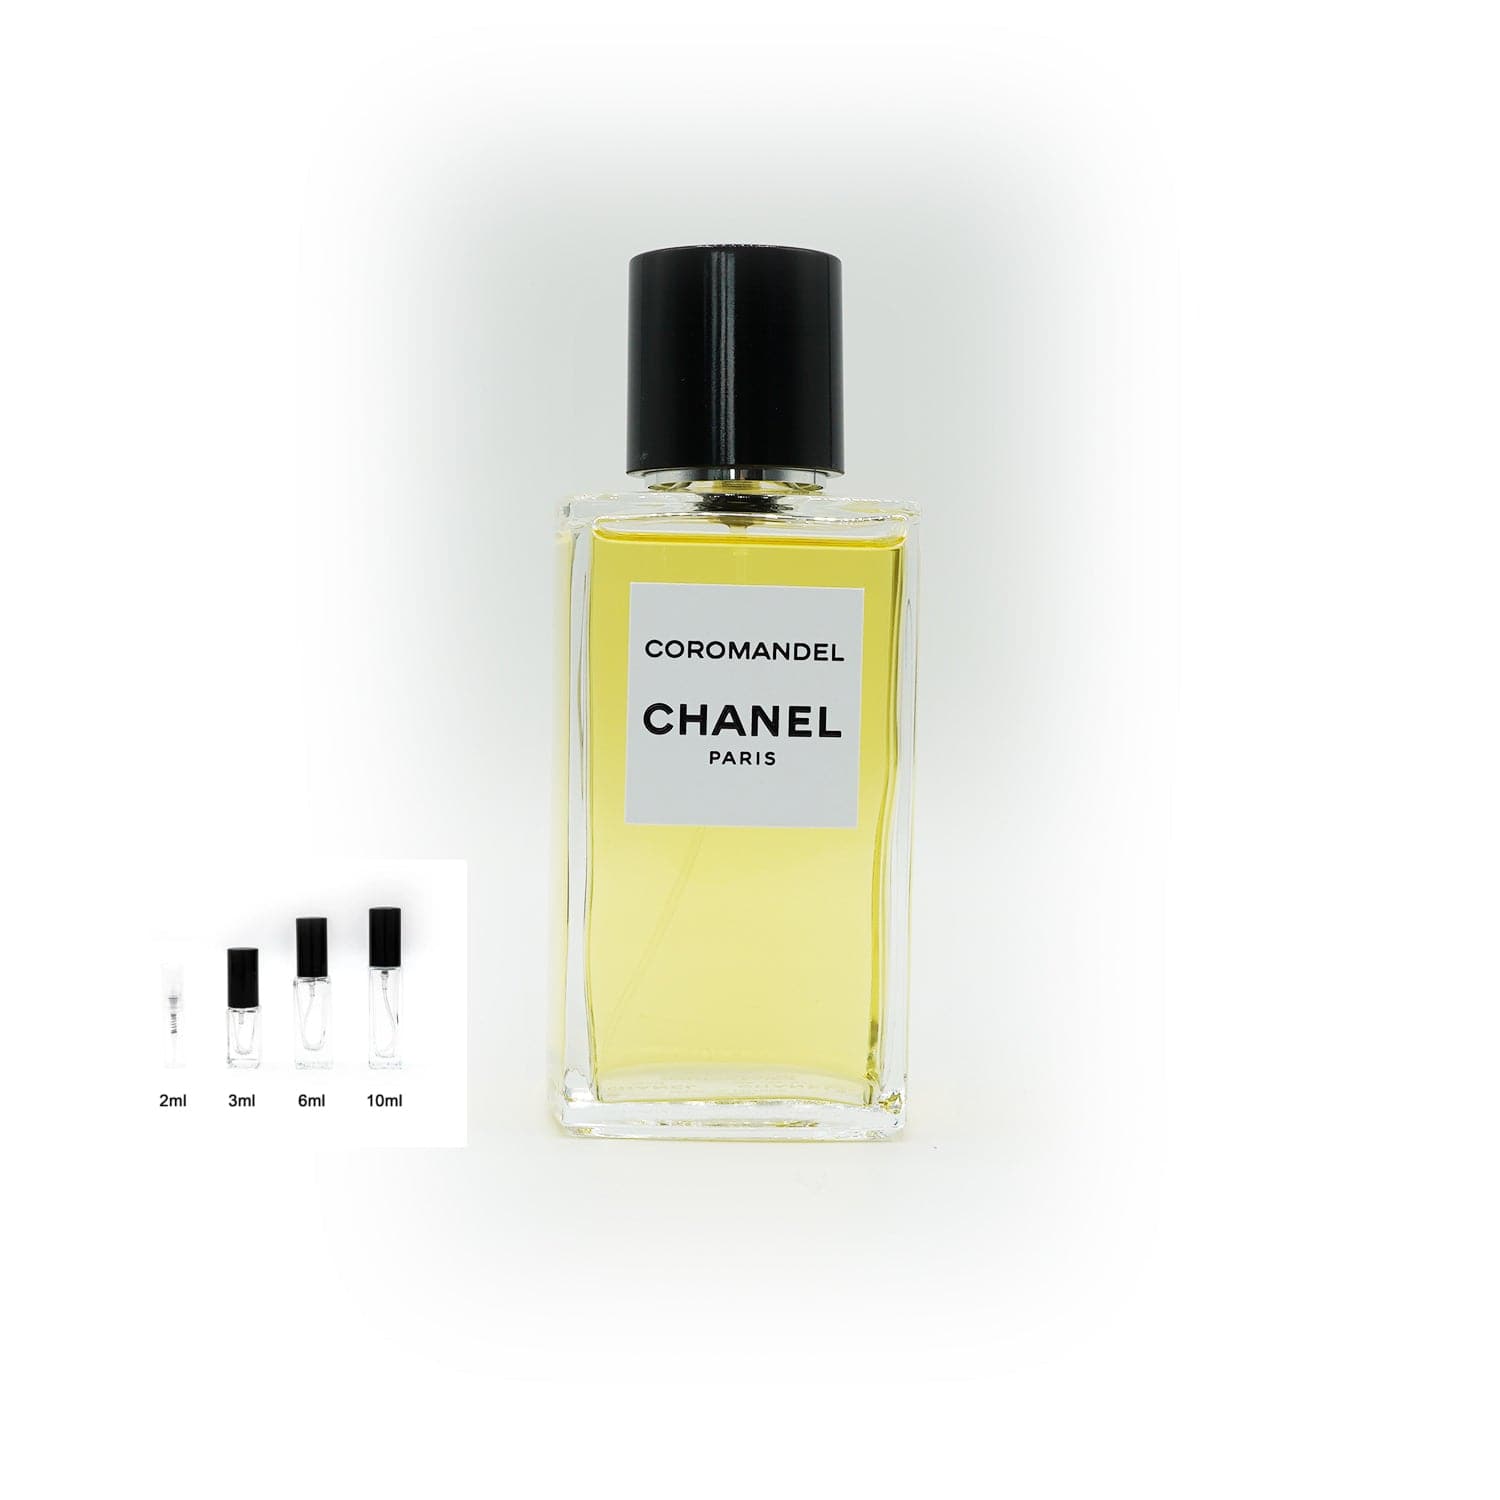 Les Exclusifs de Chanel | Coromandel Abfüllung-Parfümproben